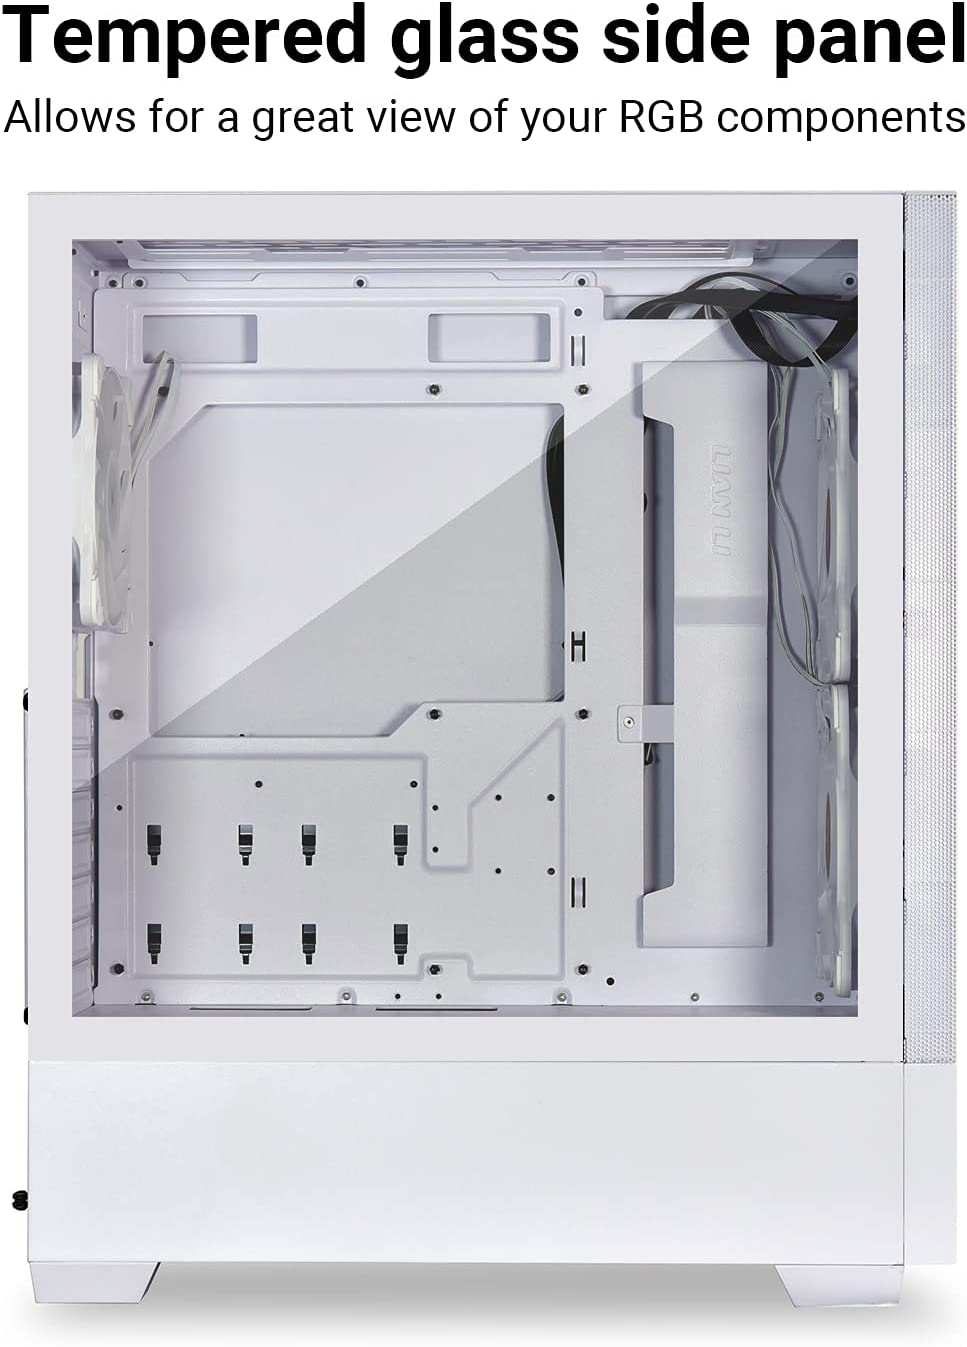 LIAN LI Mesh Airflow ATX PC Case Gaming Computer Case Mid-Tower Châssis avec 3 ventilateurs ARGB PWM pré-installés, panneau avant en maille, panneau latéral en verre trempé, prêt pour le refroidissement par eau (LANCOOL 205 MESH, blanc)